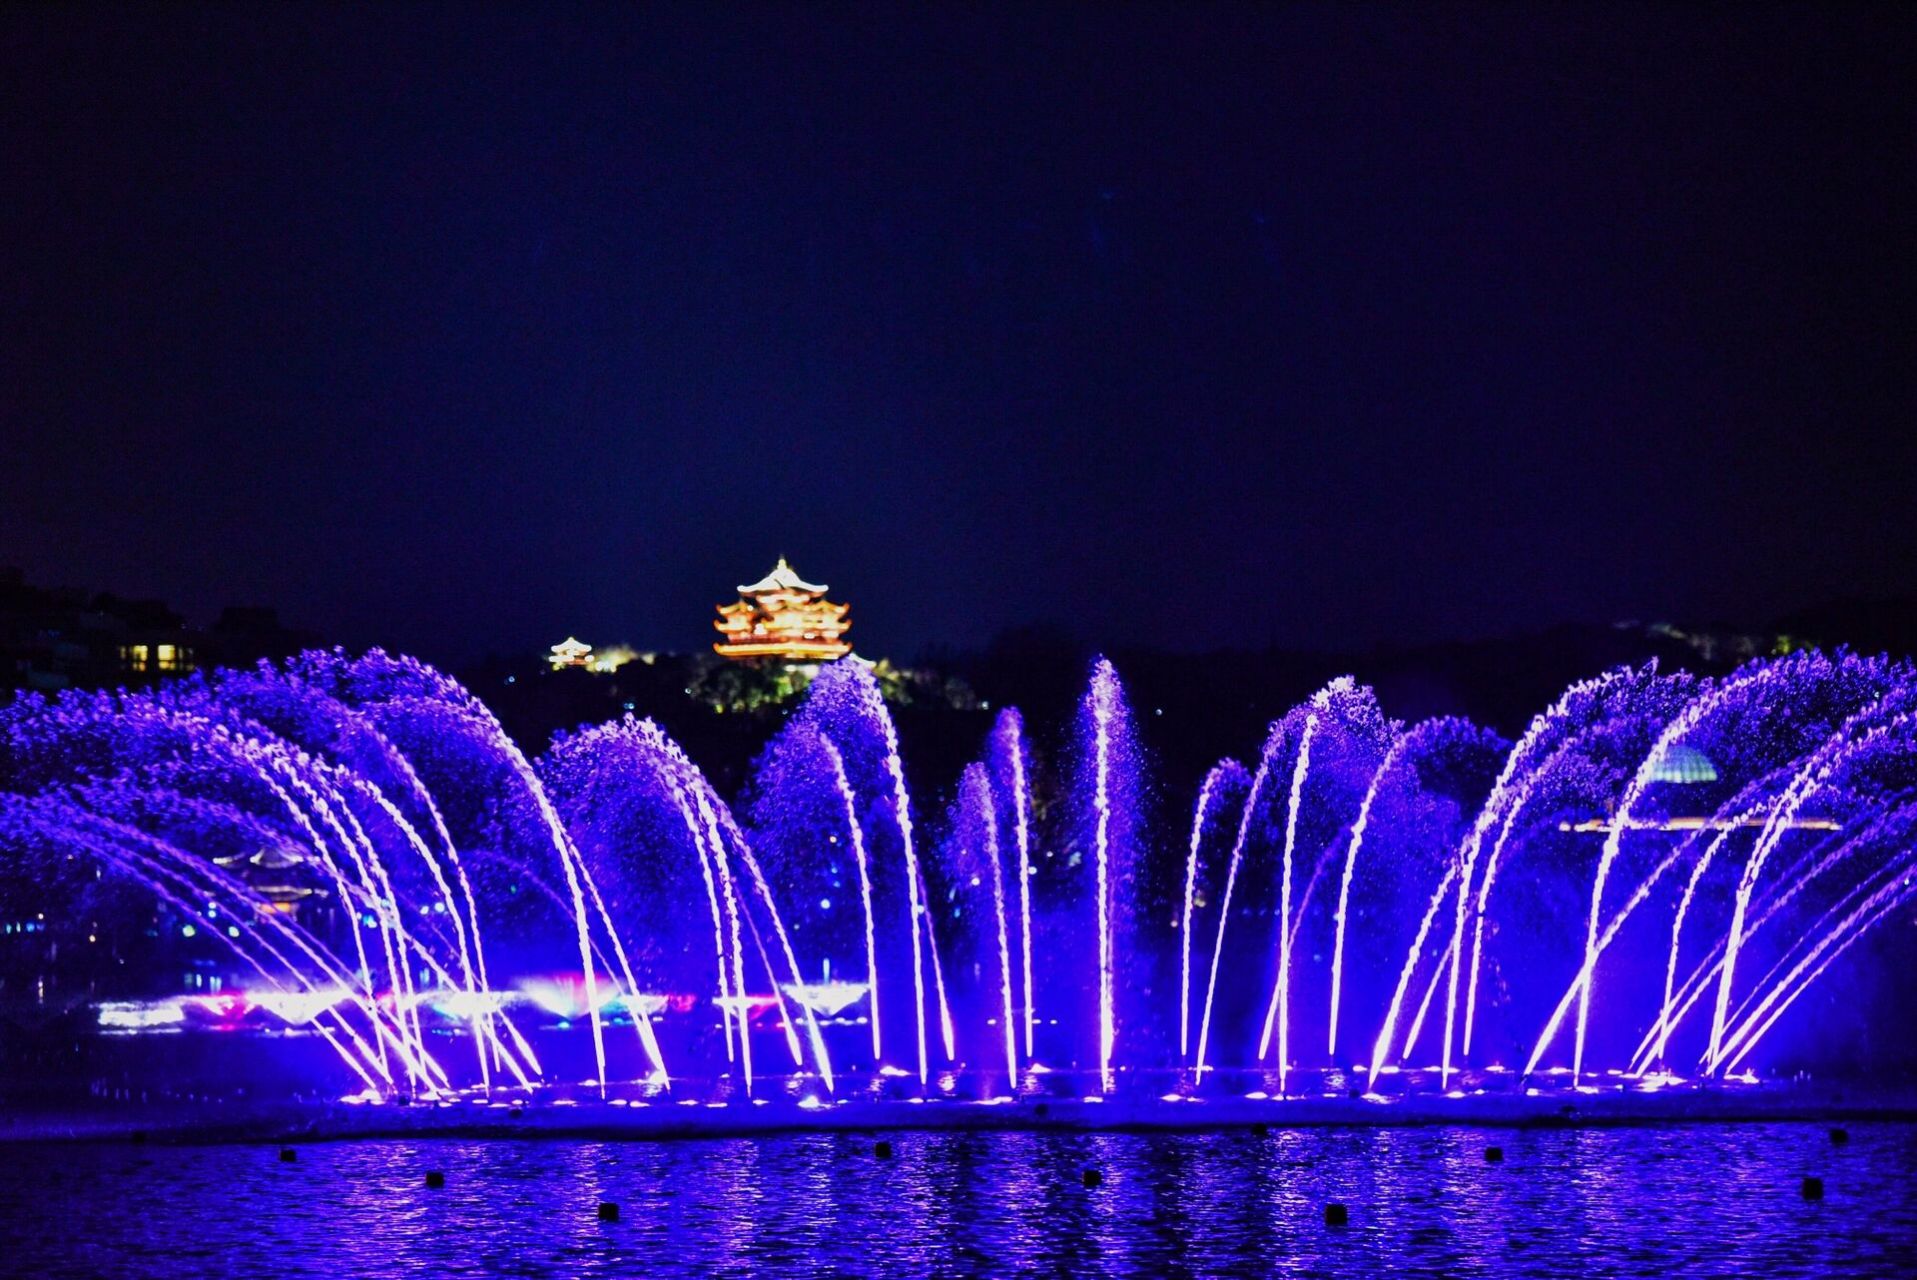 杭州西湖音乐喷泉今日试运行 阔别3年之久的西湖音乐喷泉 今日起试